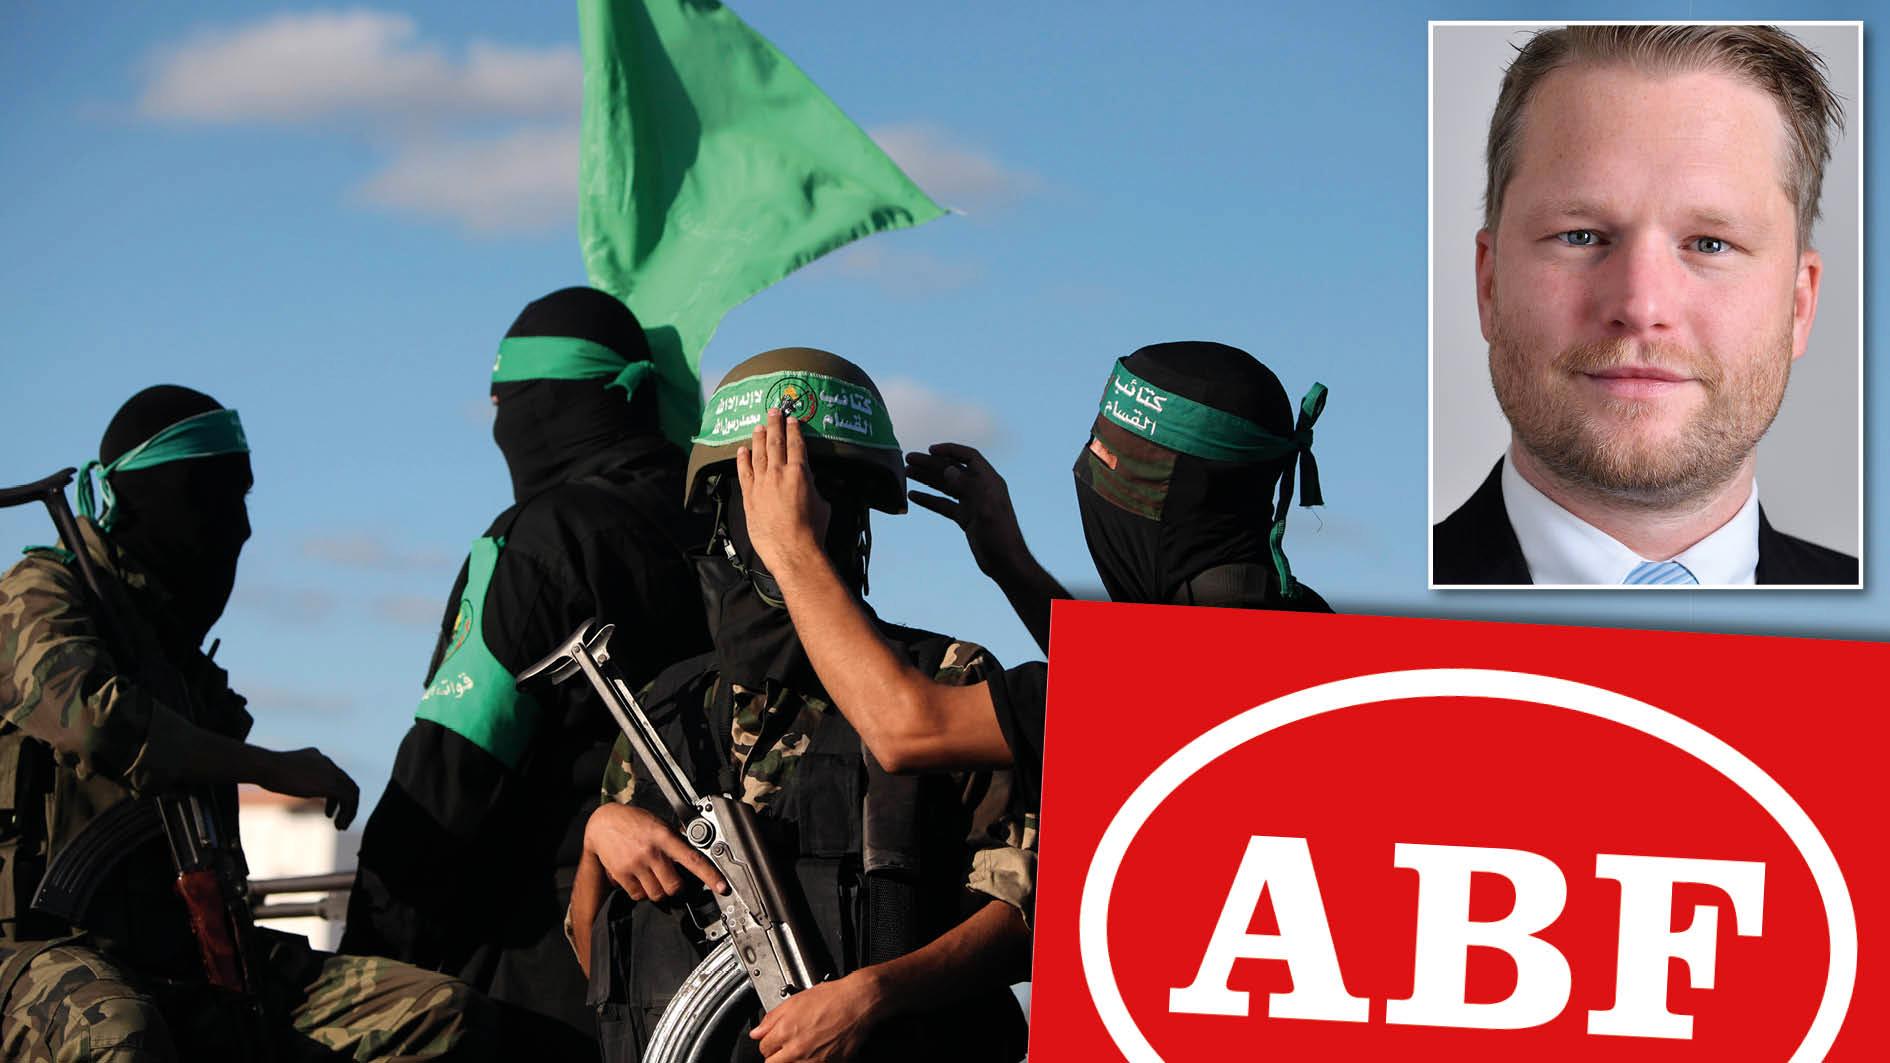 Enligt medieuppgifter har ABF har upplåtit lokaler åt aktörer som försvarar den islamistiska terroristgruppen Hamas. Detta är fullständigt oacceptabelt. SD kommer att intensifiera arbetet i Tidösamarbetet för att stoppa utbetalningar till extremister, skriver Alexander Christiansson.